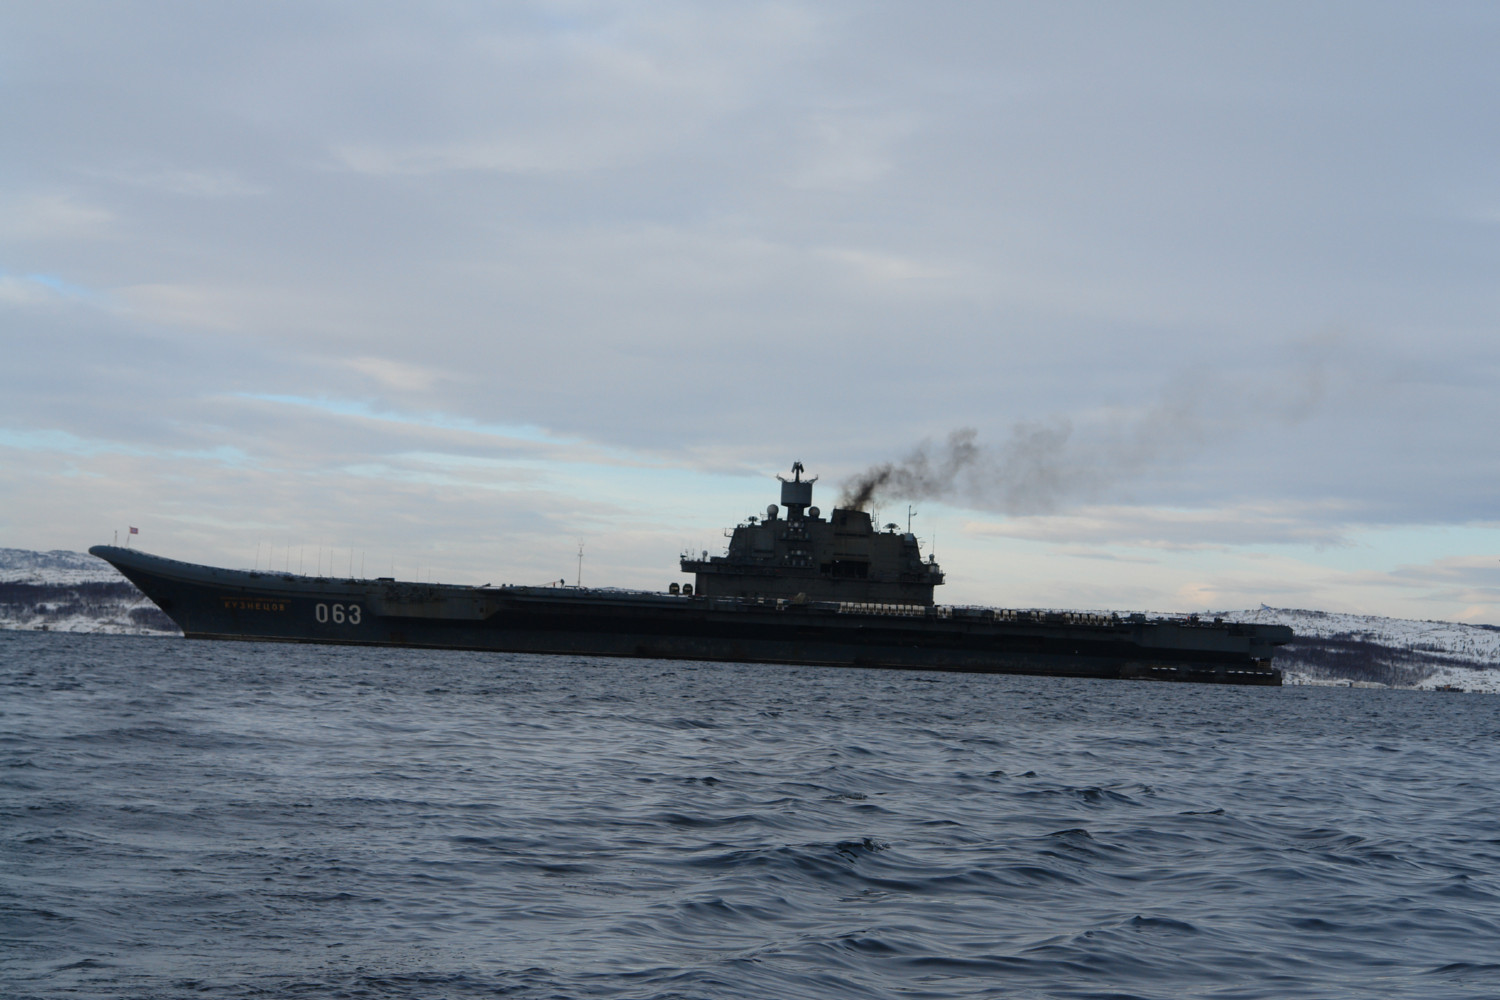 空母アドミラル クズネツォフ帰港 09年3月2日 N G クズネツォフ記念 ウリヤノフスク赤旗 親衛ロシア海軍情報管理局